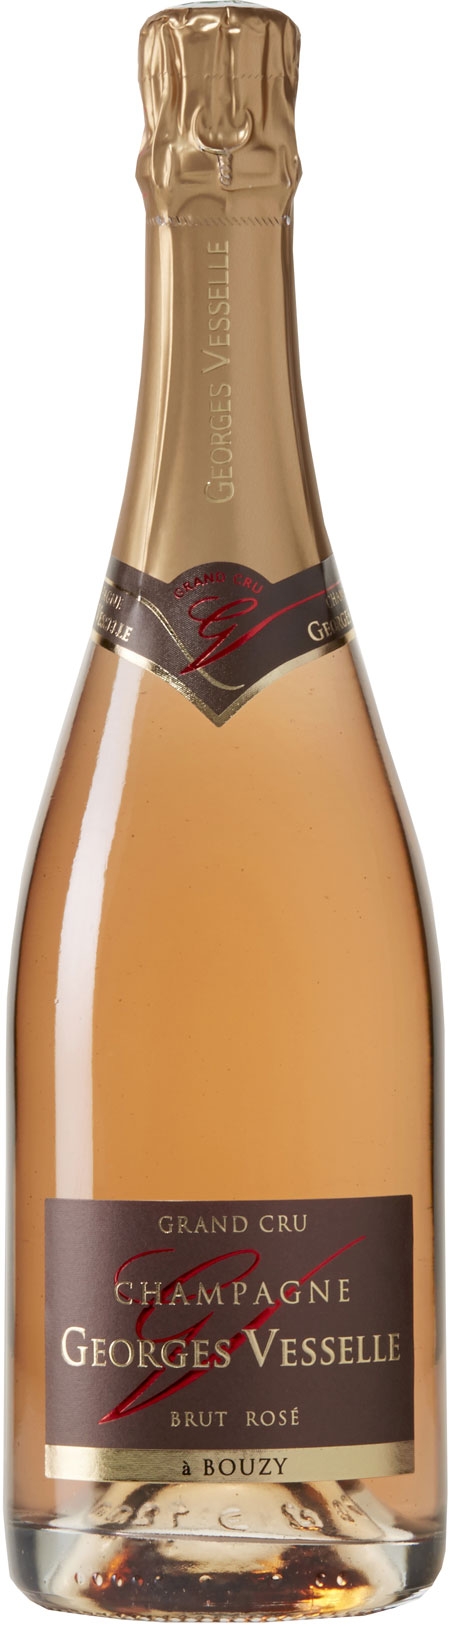 Champagne Georges Vesselle - Grand Cru Brut Rosé